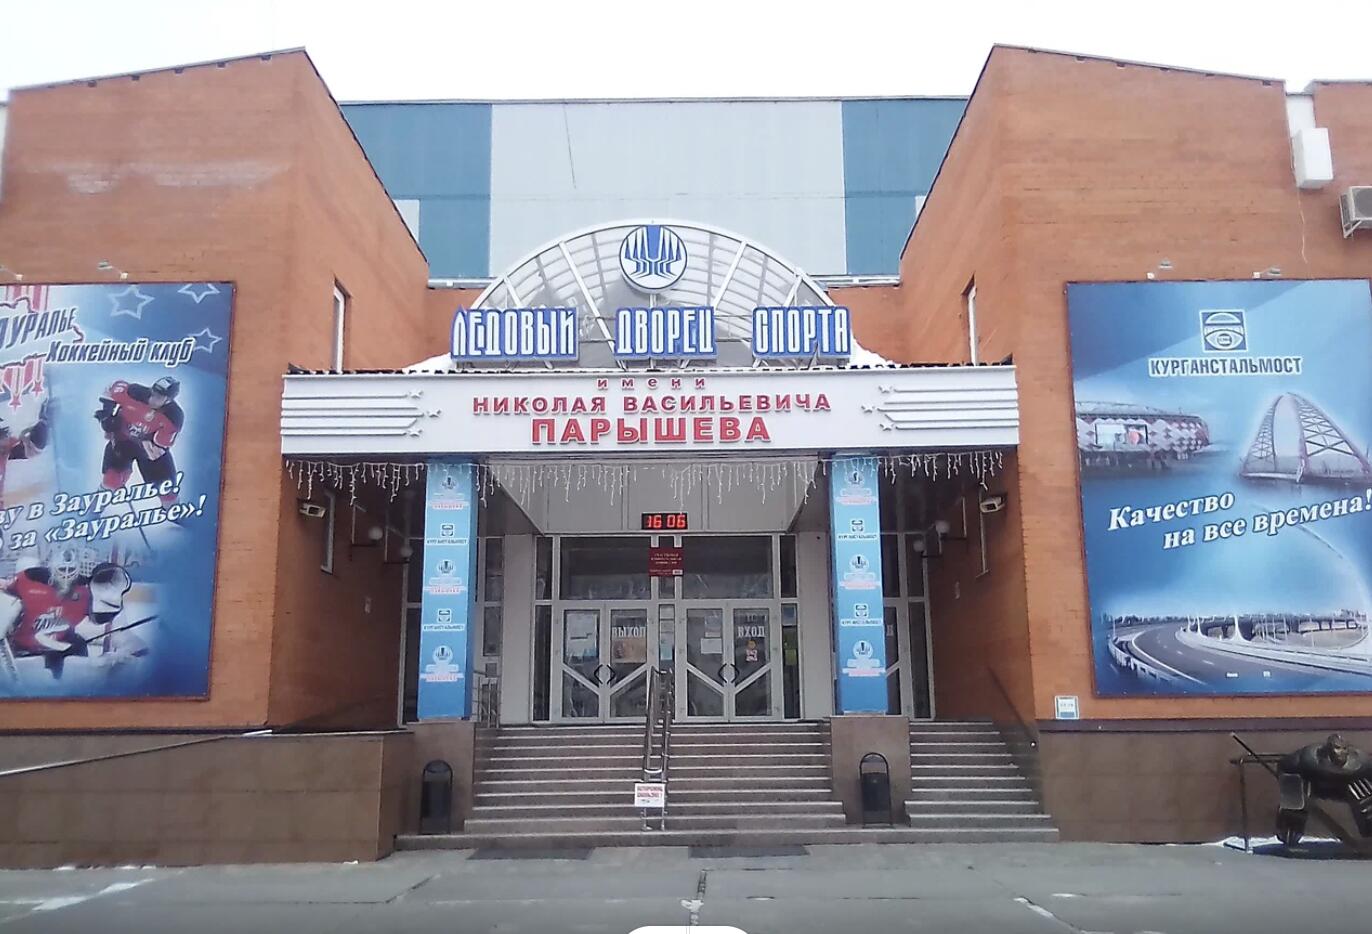 Ледовый дворец спорта им. Н.В. Парышева